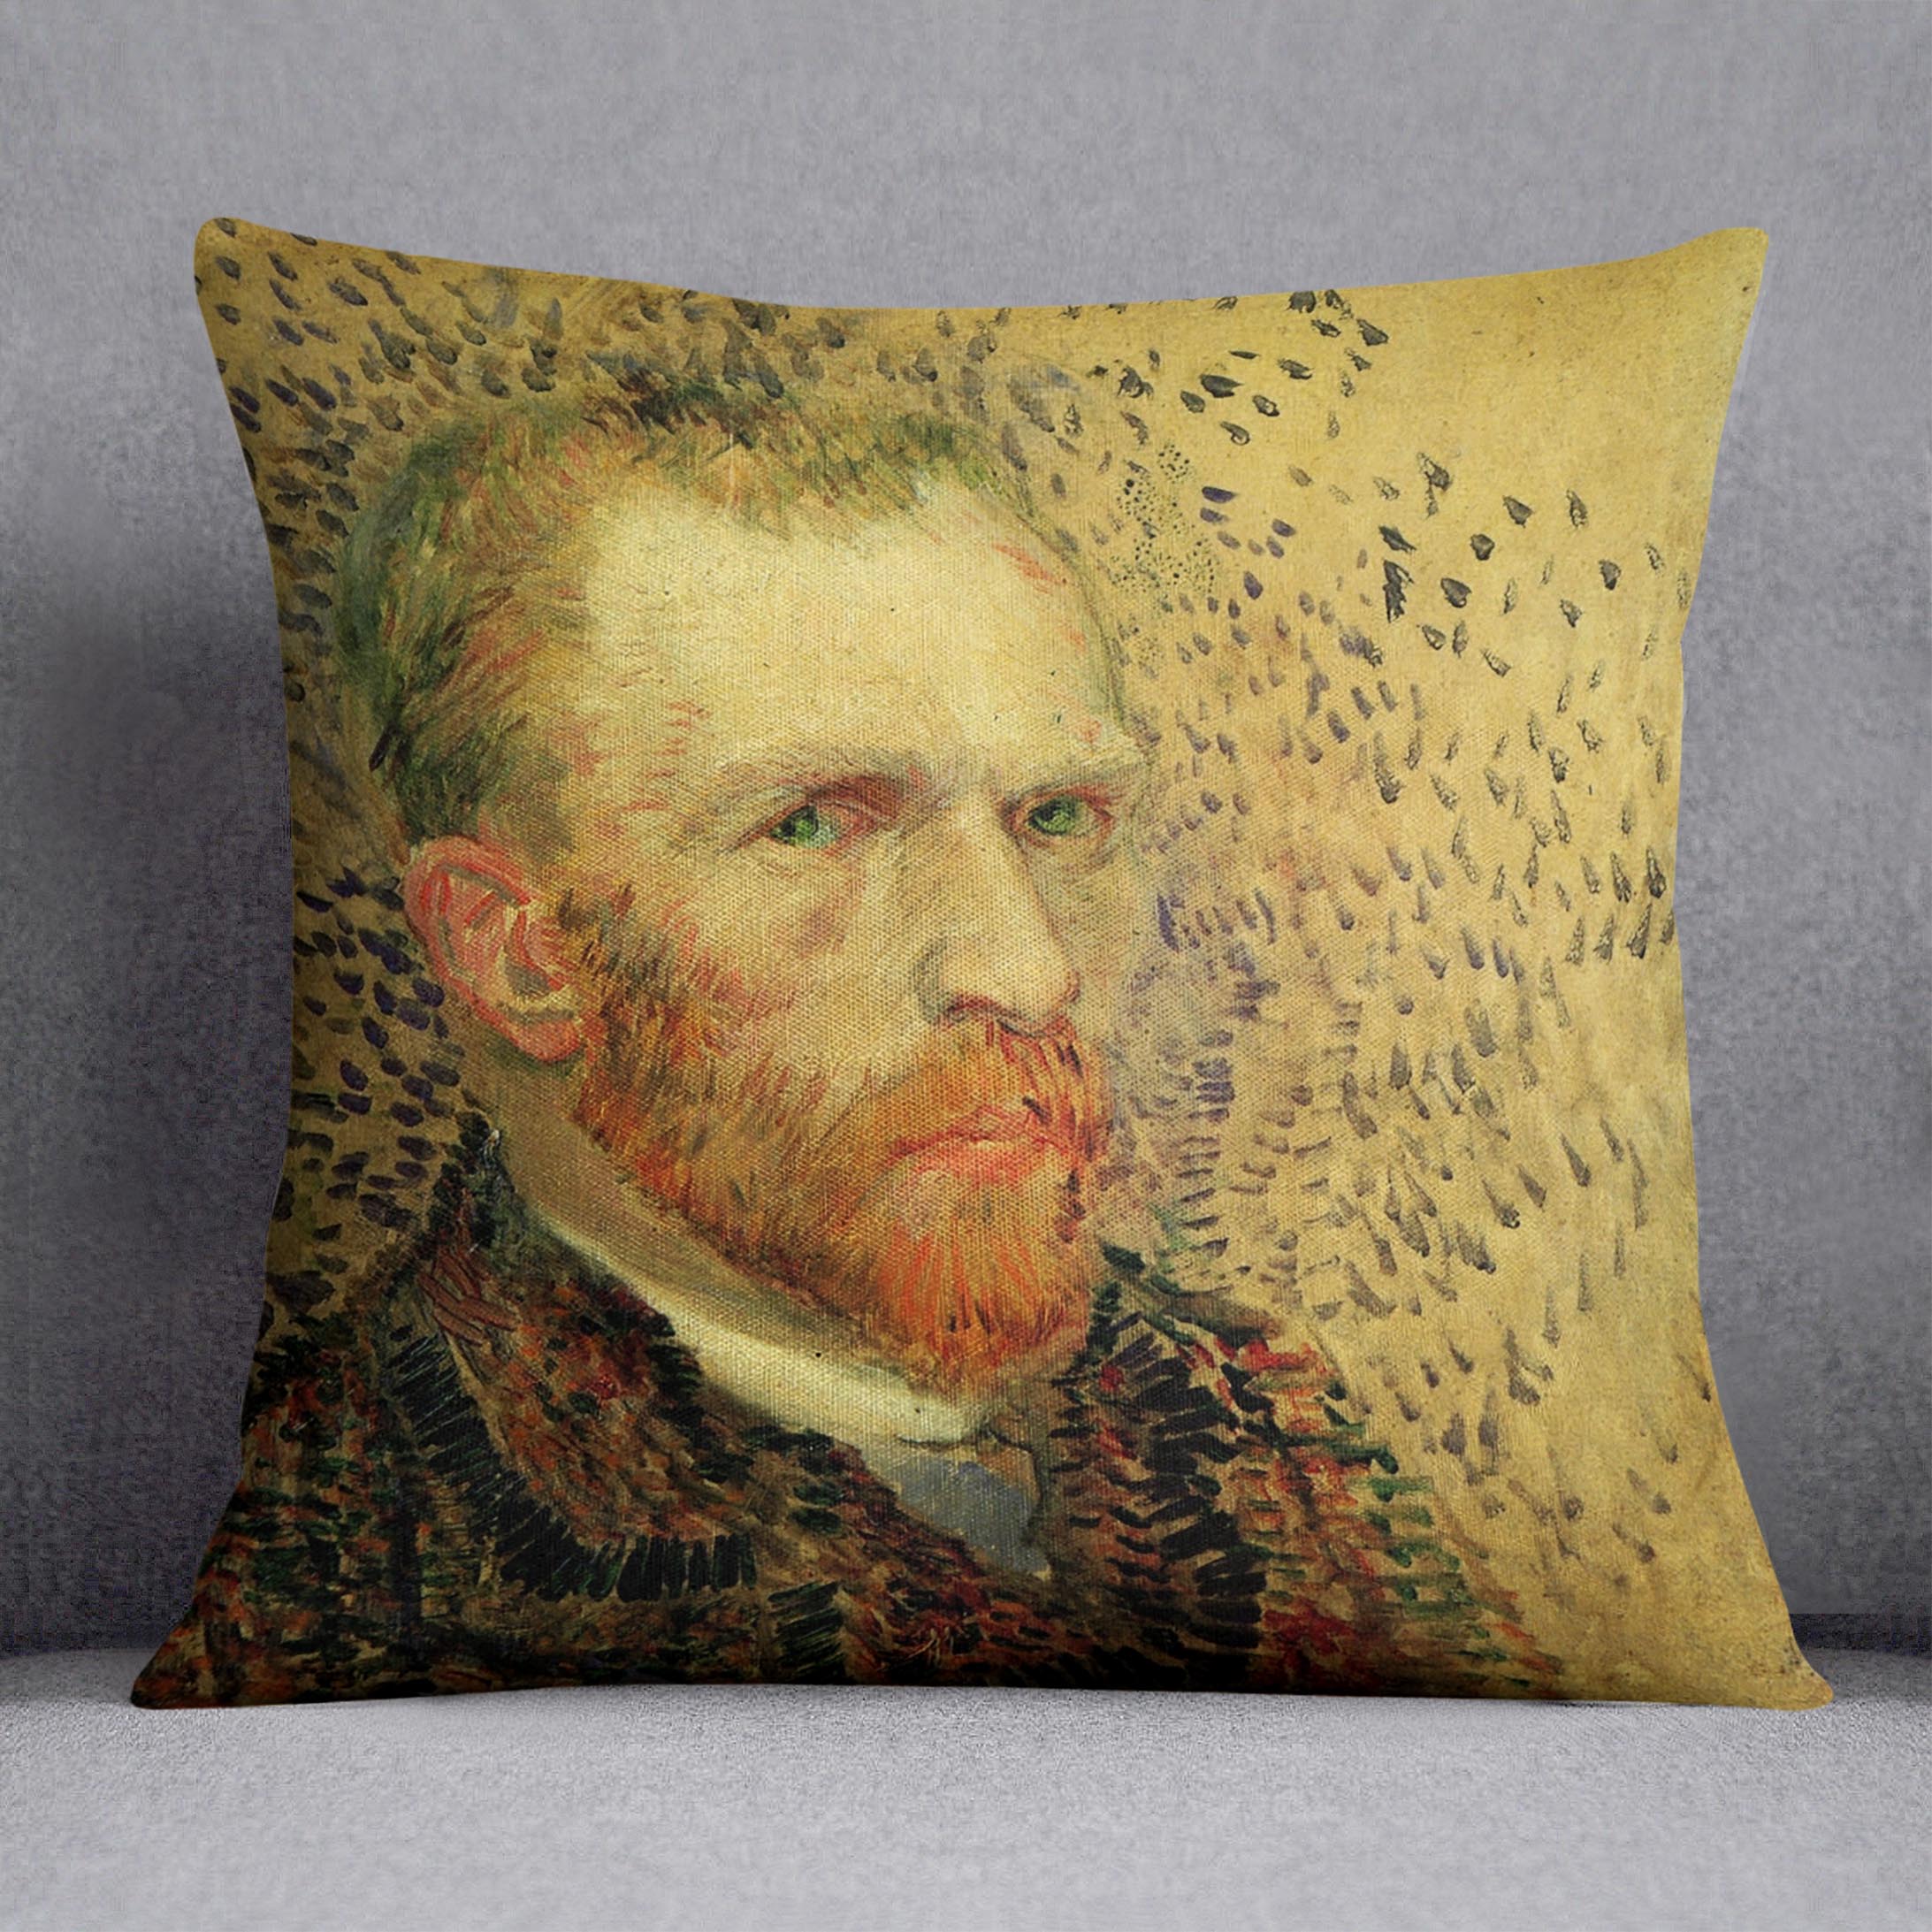 Self-Portrait 5 by Van Gogh Cushion